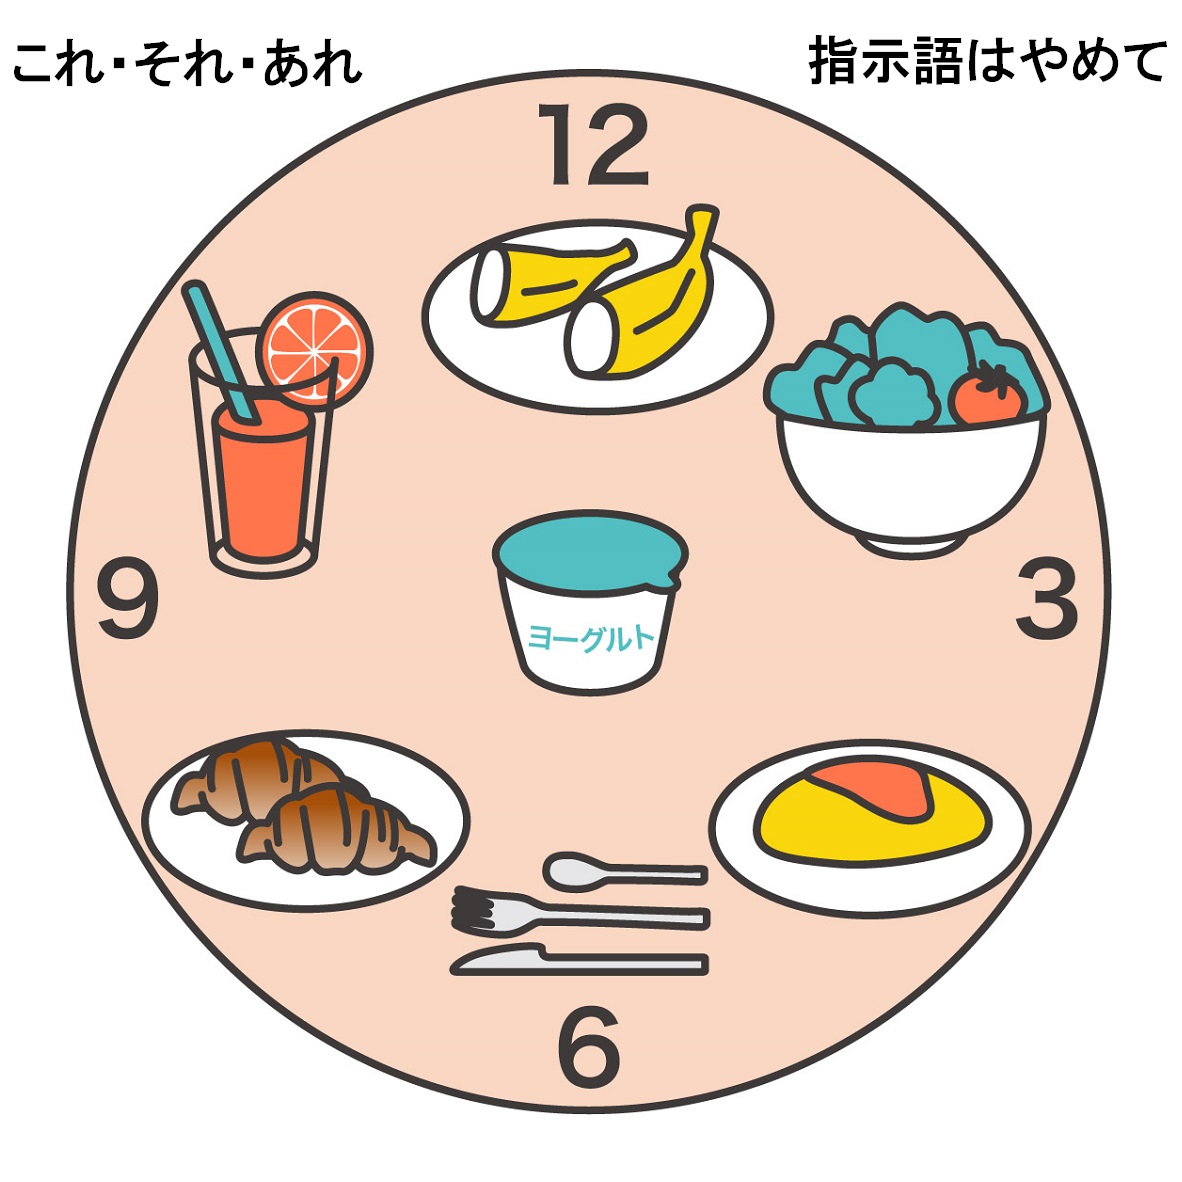 テキスト：これ・それ・あれ　指示語はやめて／イラスト：丸テーブルに並ぶ料理と時計の文字盤